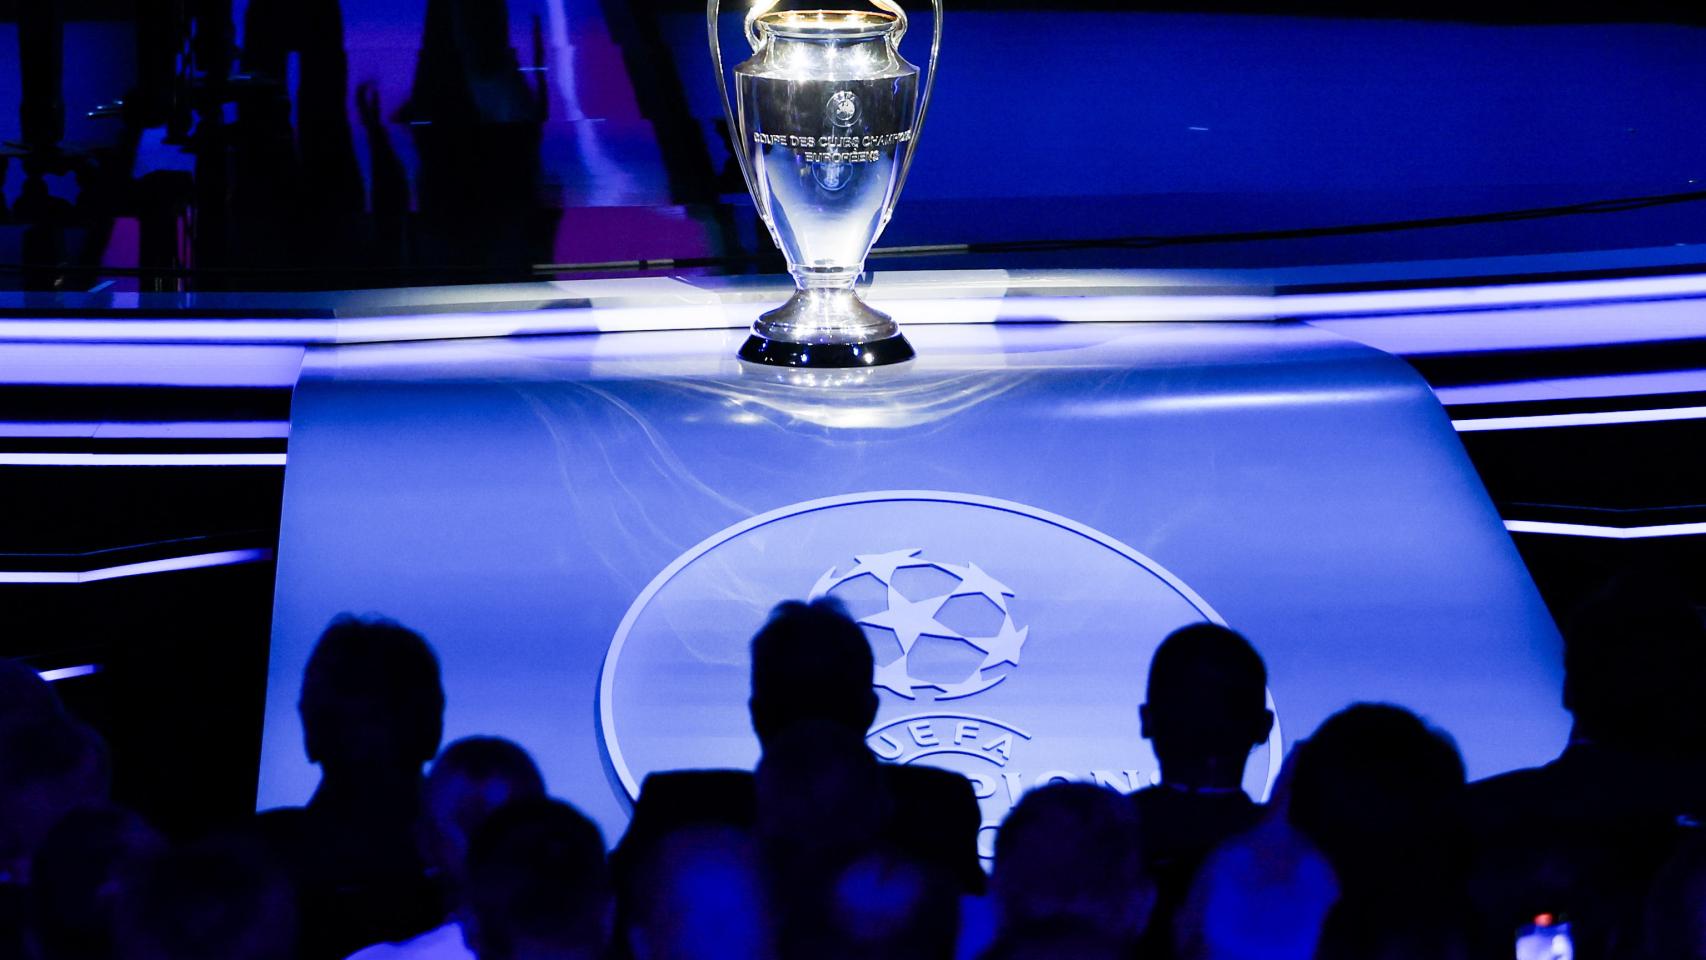 Trofeo de la Champions League durante la gala del sorteo de la fase de grupos en Mónaco.